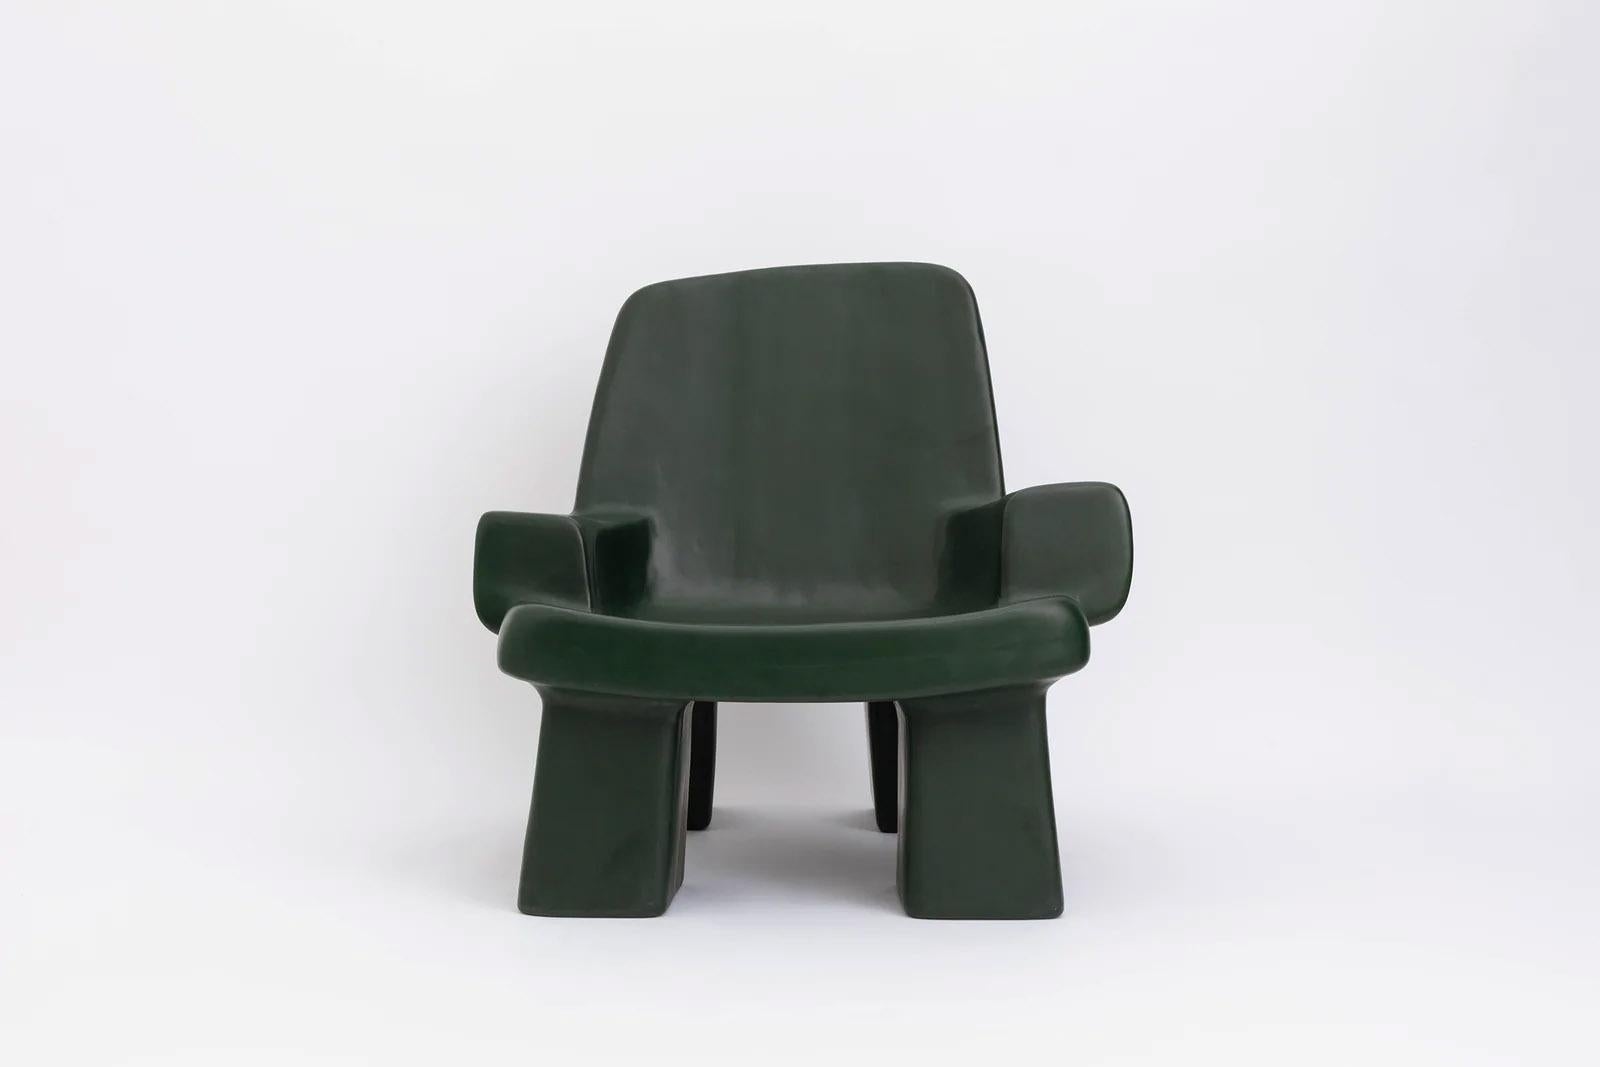 Zeitgenössischer Sessel aus Fiberglas - Fudge chair von Faye Toogood. Dieses Modell ist in der Glasfaserausführung Malachit abgebildet. 
Gestaltung: Faye Toogood
MATERIAL: Fiberglas 
Erhältlich auch in Anthrazit, Creme oder Malachit